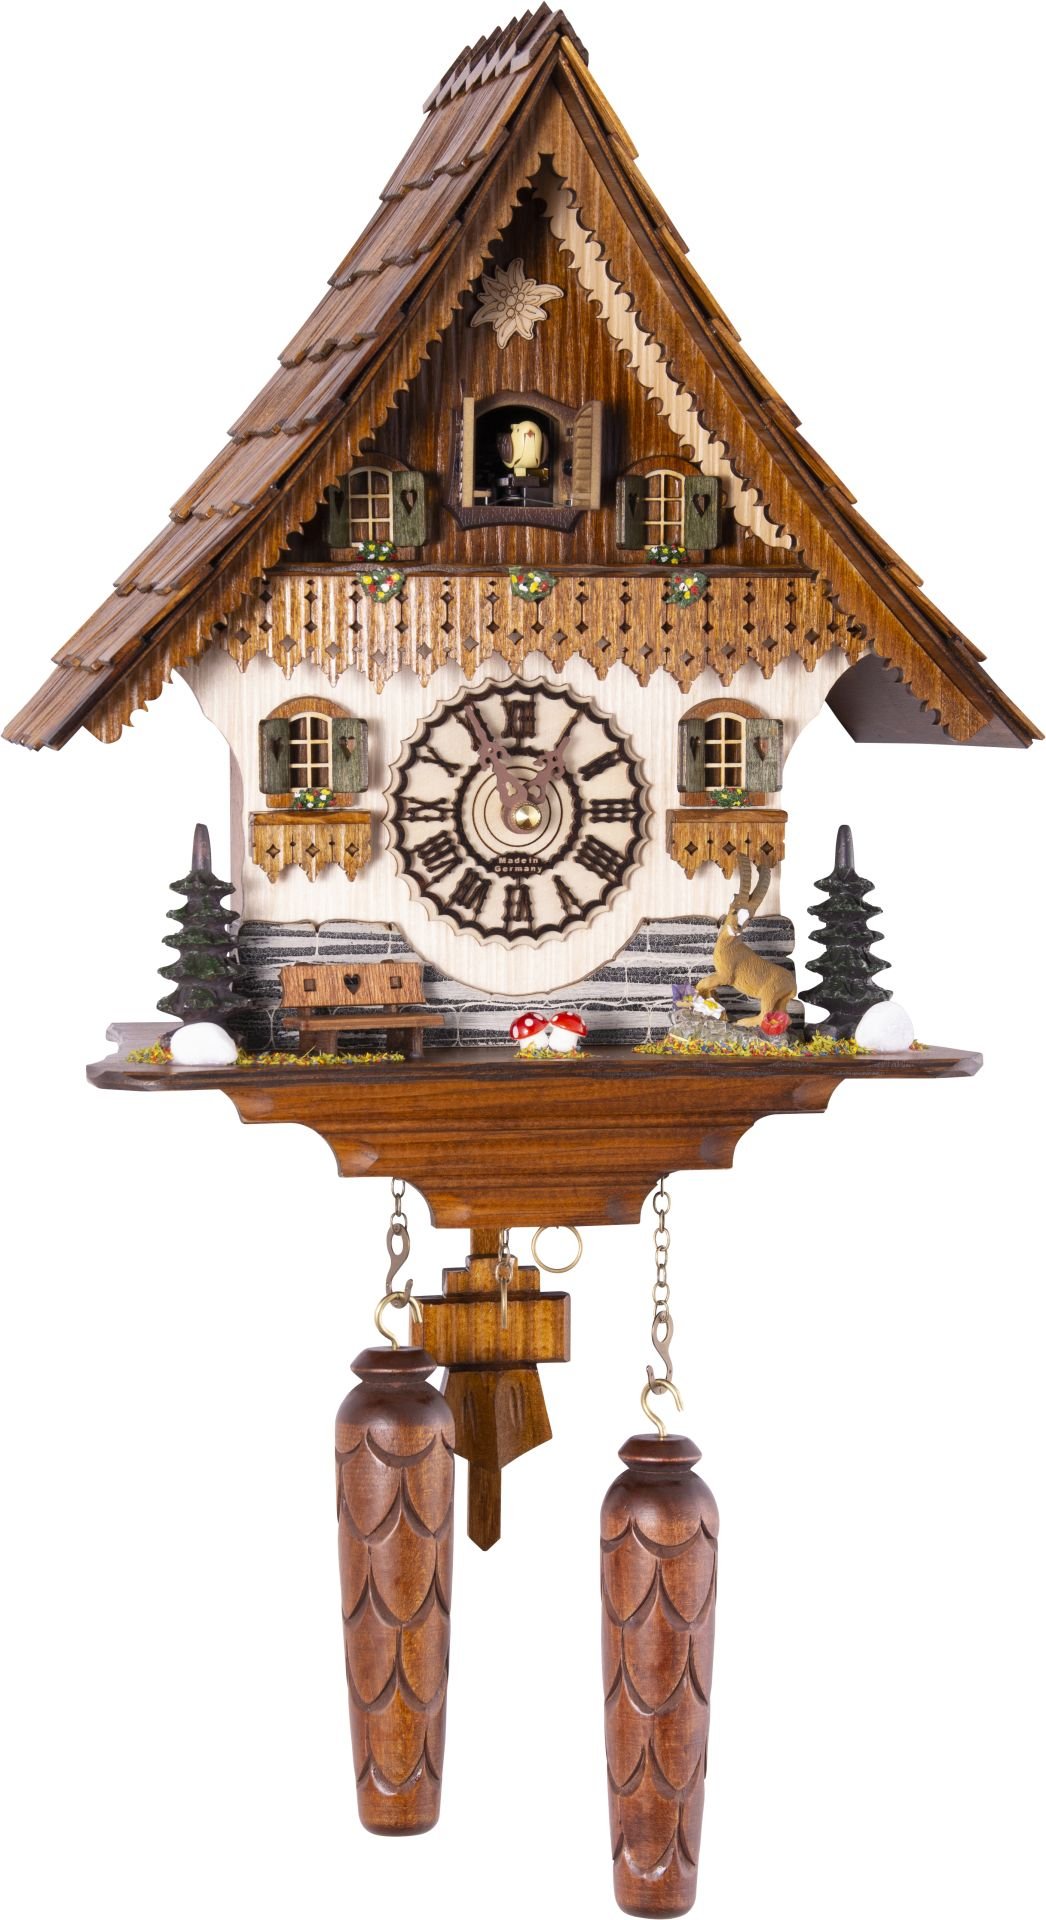 Kuckucksuhr Chalet-Stil Quarz-Uhrwerk 35cm von Trenkle Uhren